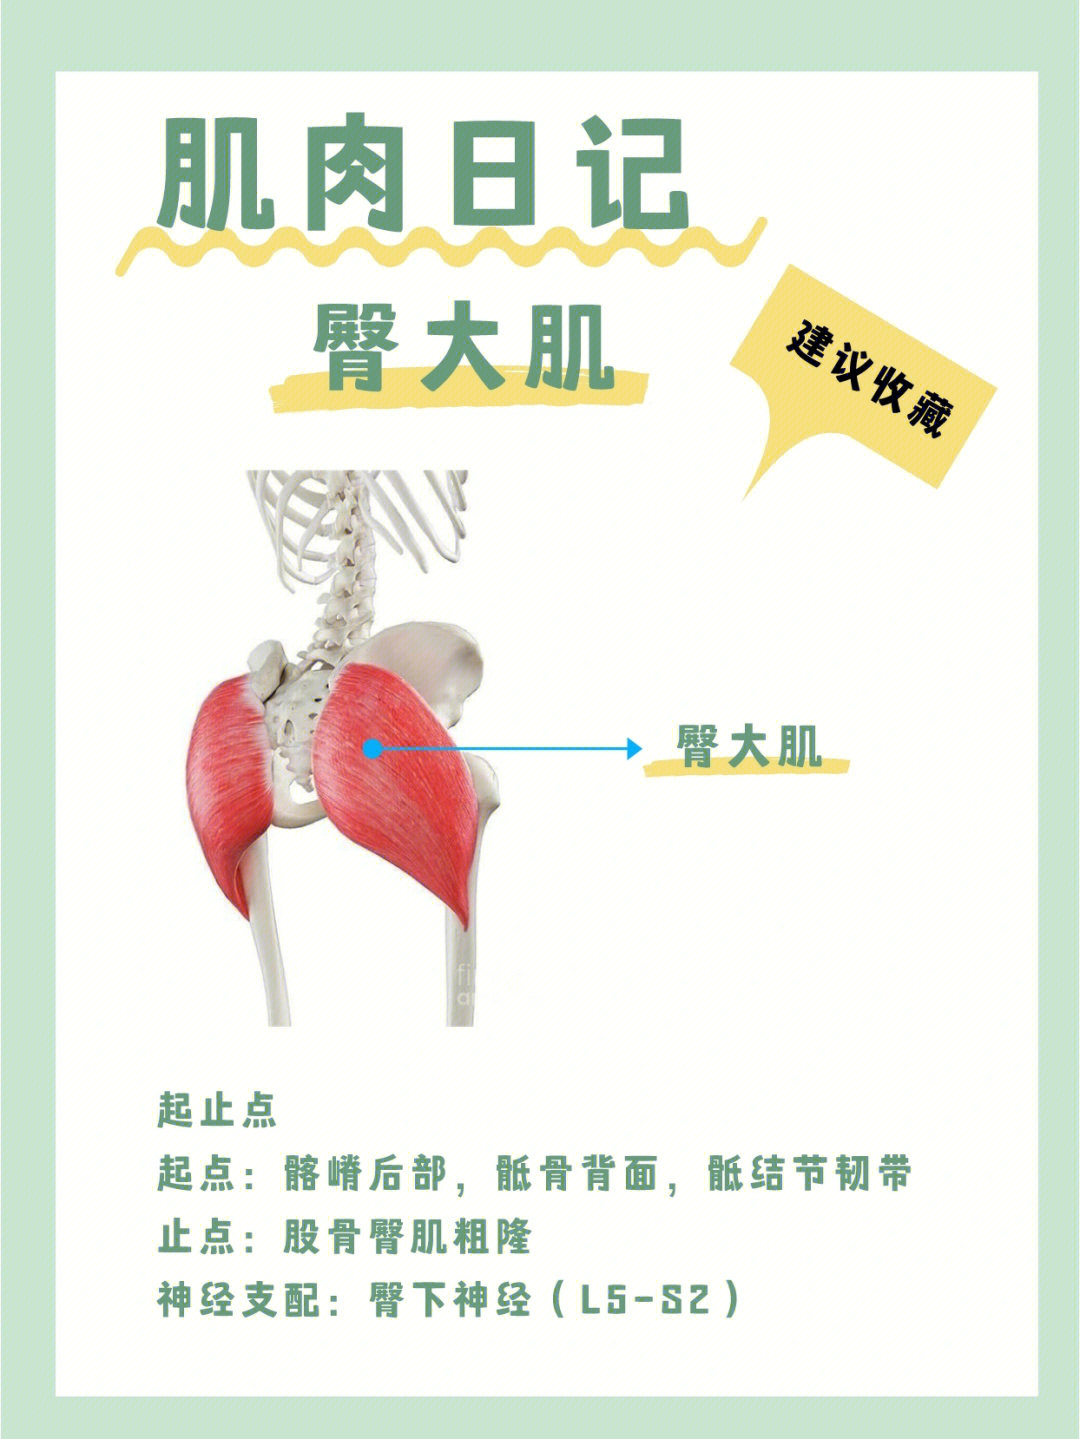 臀大肌功能解剖图片